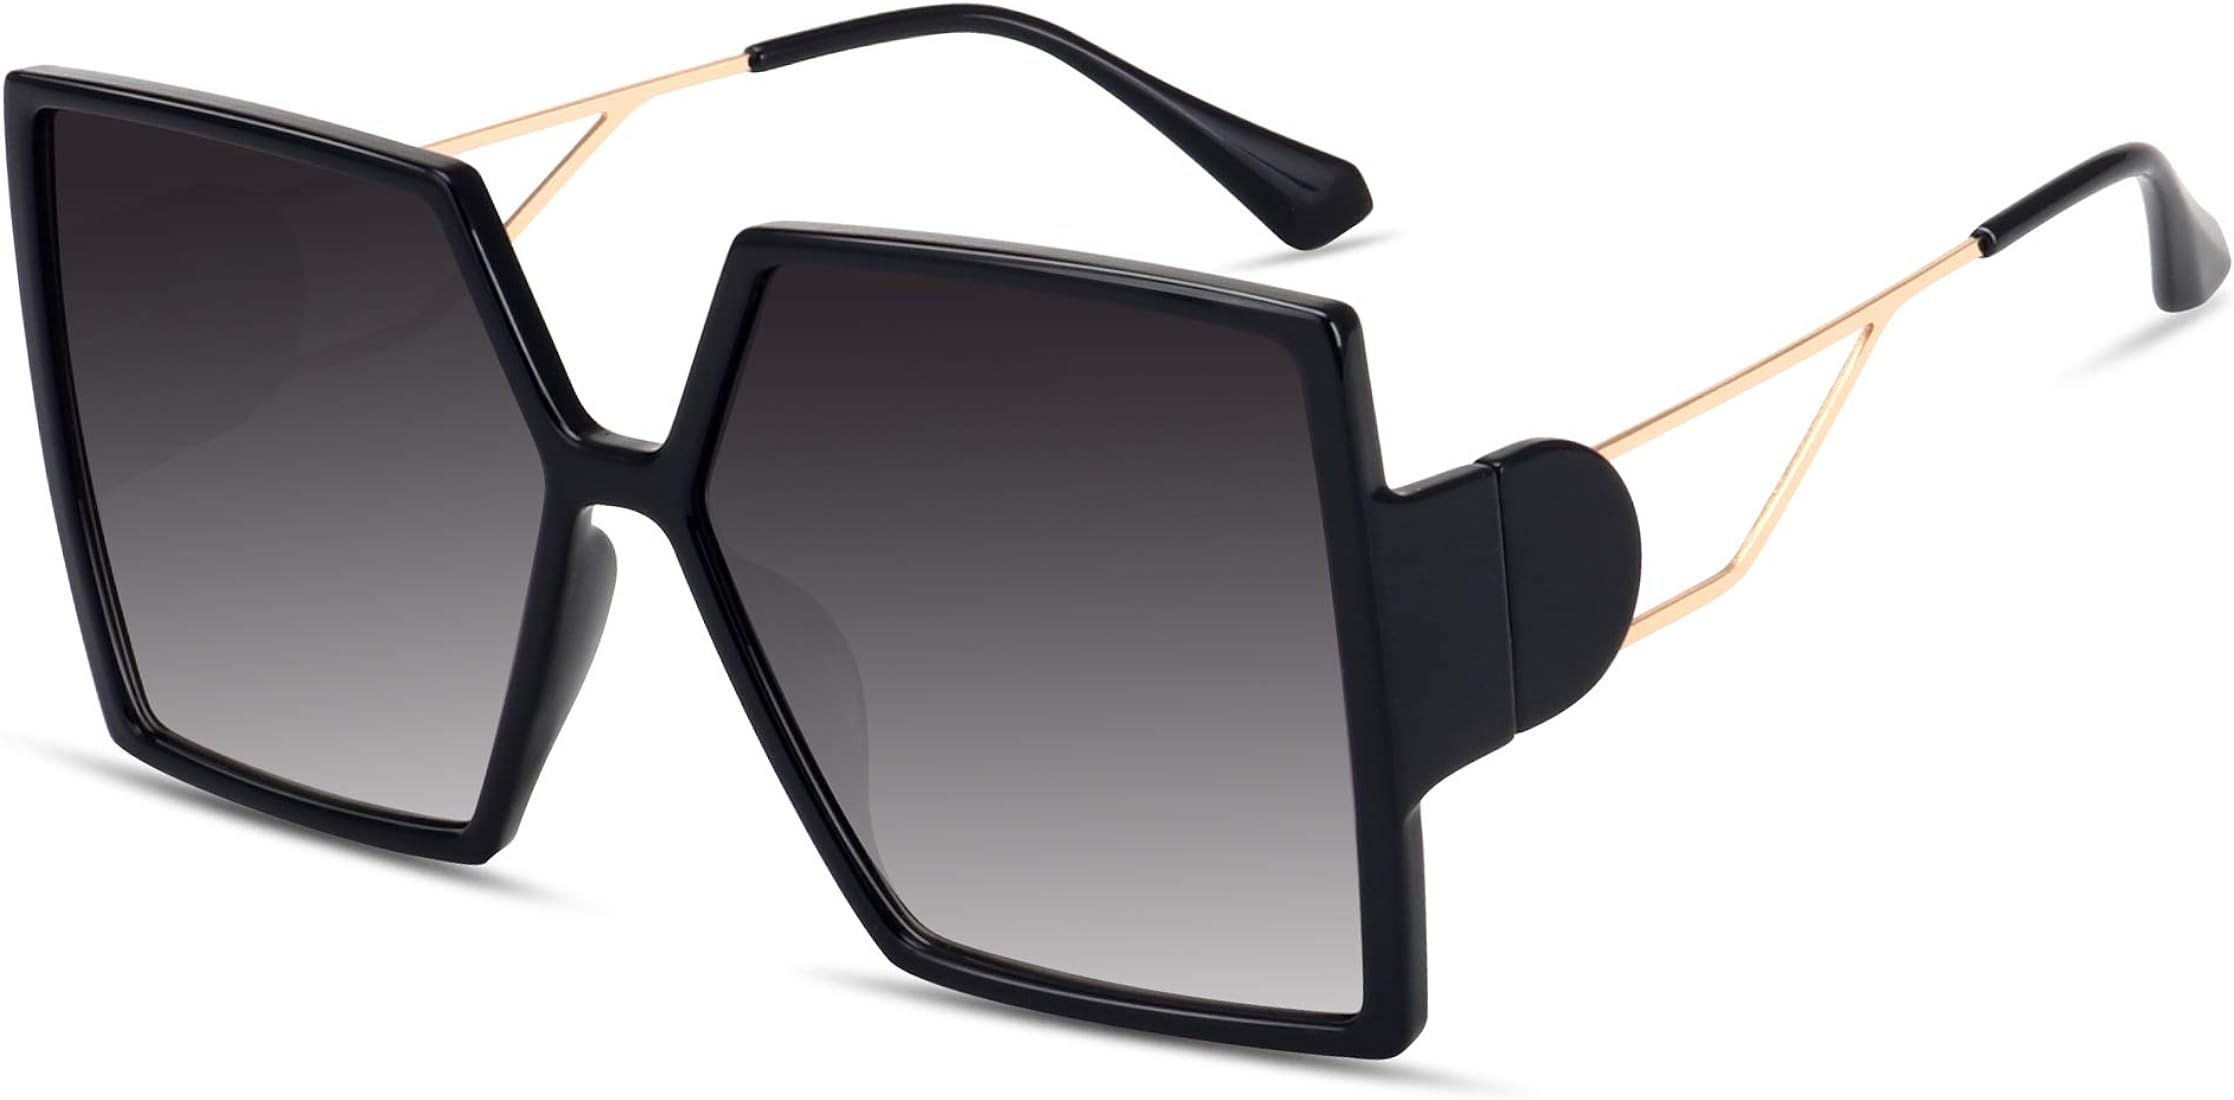 Oversized Square Sunglasses for Women Fashion Large Shield Shades UV400 Protection | Amazon (US)